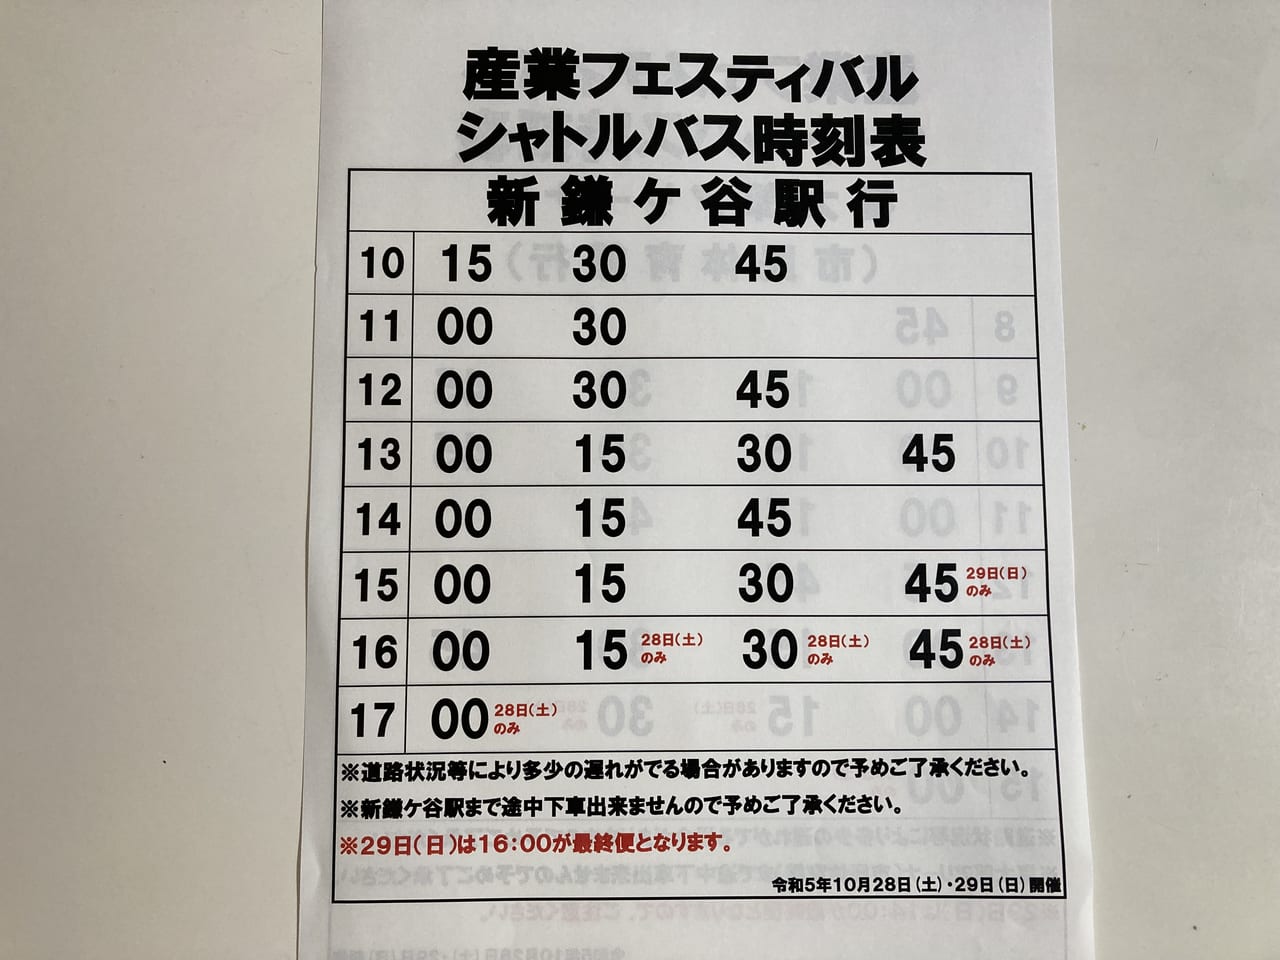 鎌ケ谷産業フェスティバルシャトルバス時刻表